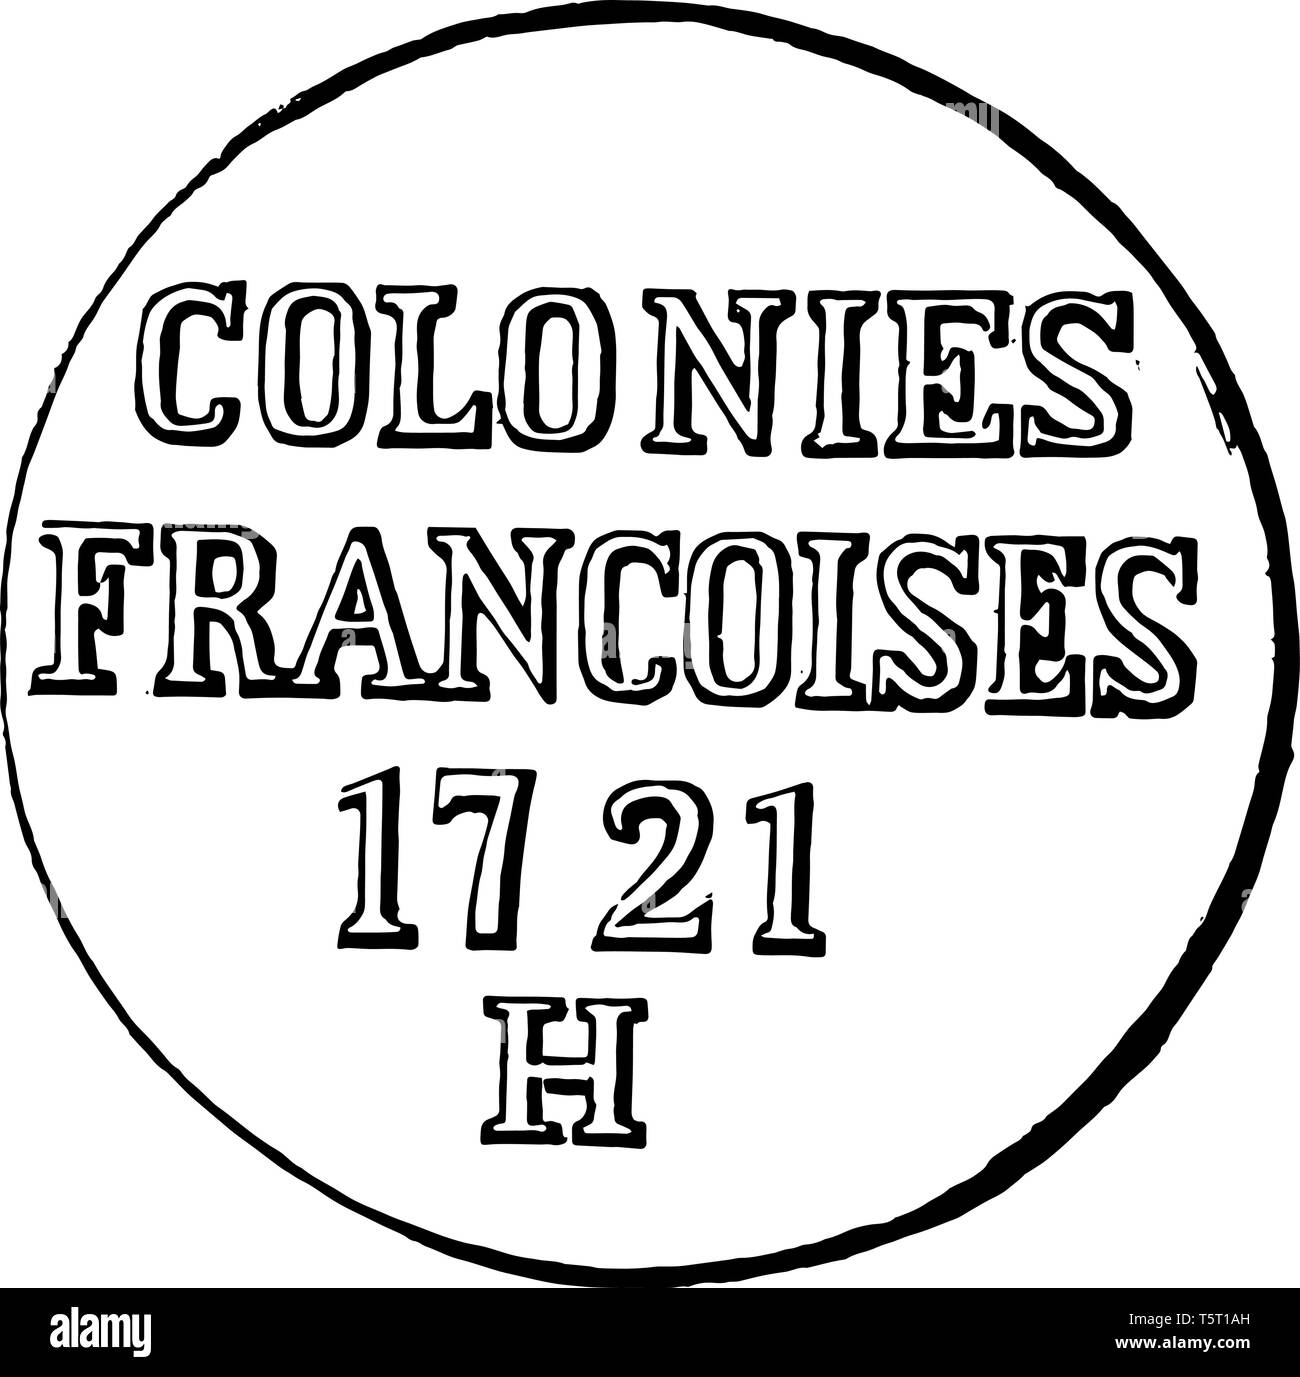 Questa è l'immagine di colonie. Colonie Francoise's 1721 H è scritto sulla parte superiore della moneta, vintage disegno della linea di incisione o illustrazione. Illustrazione Vettoriale